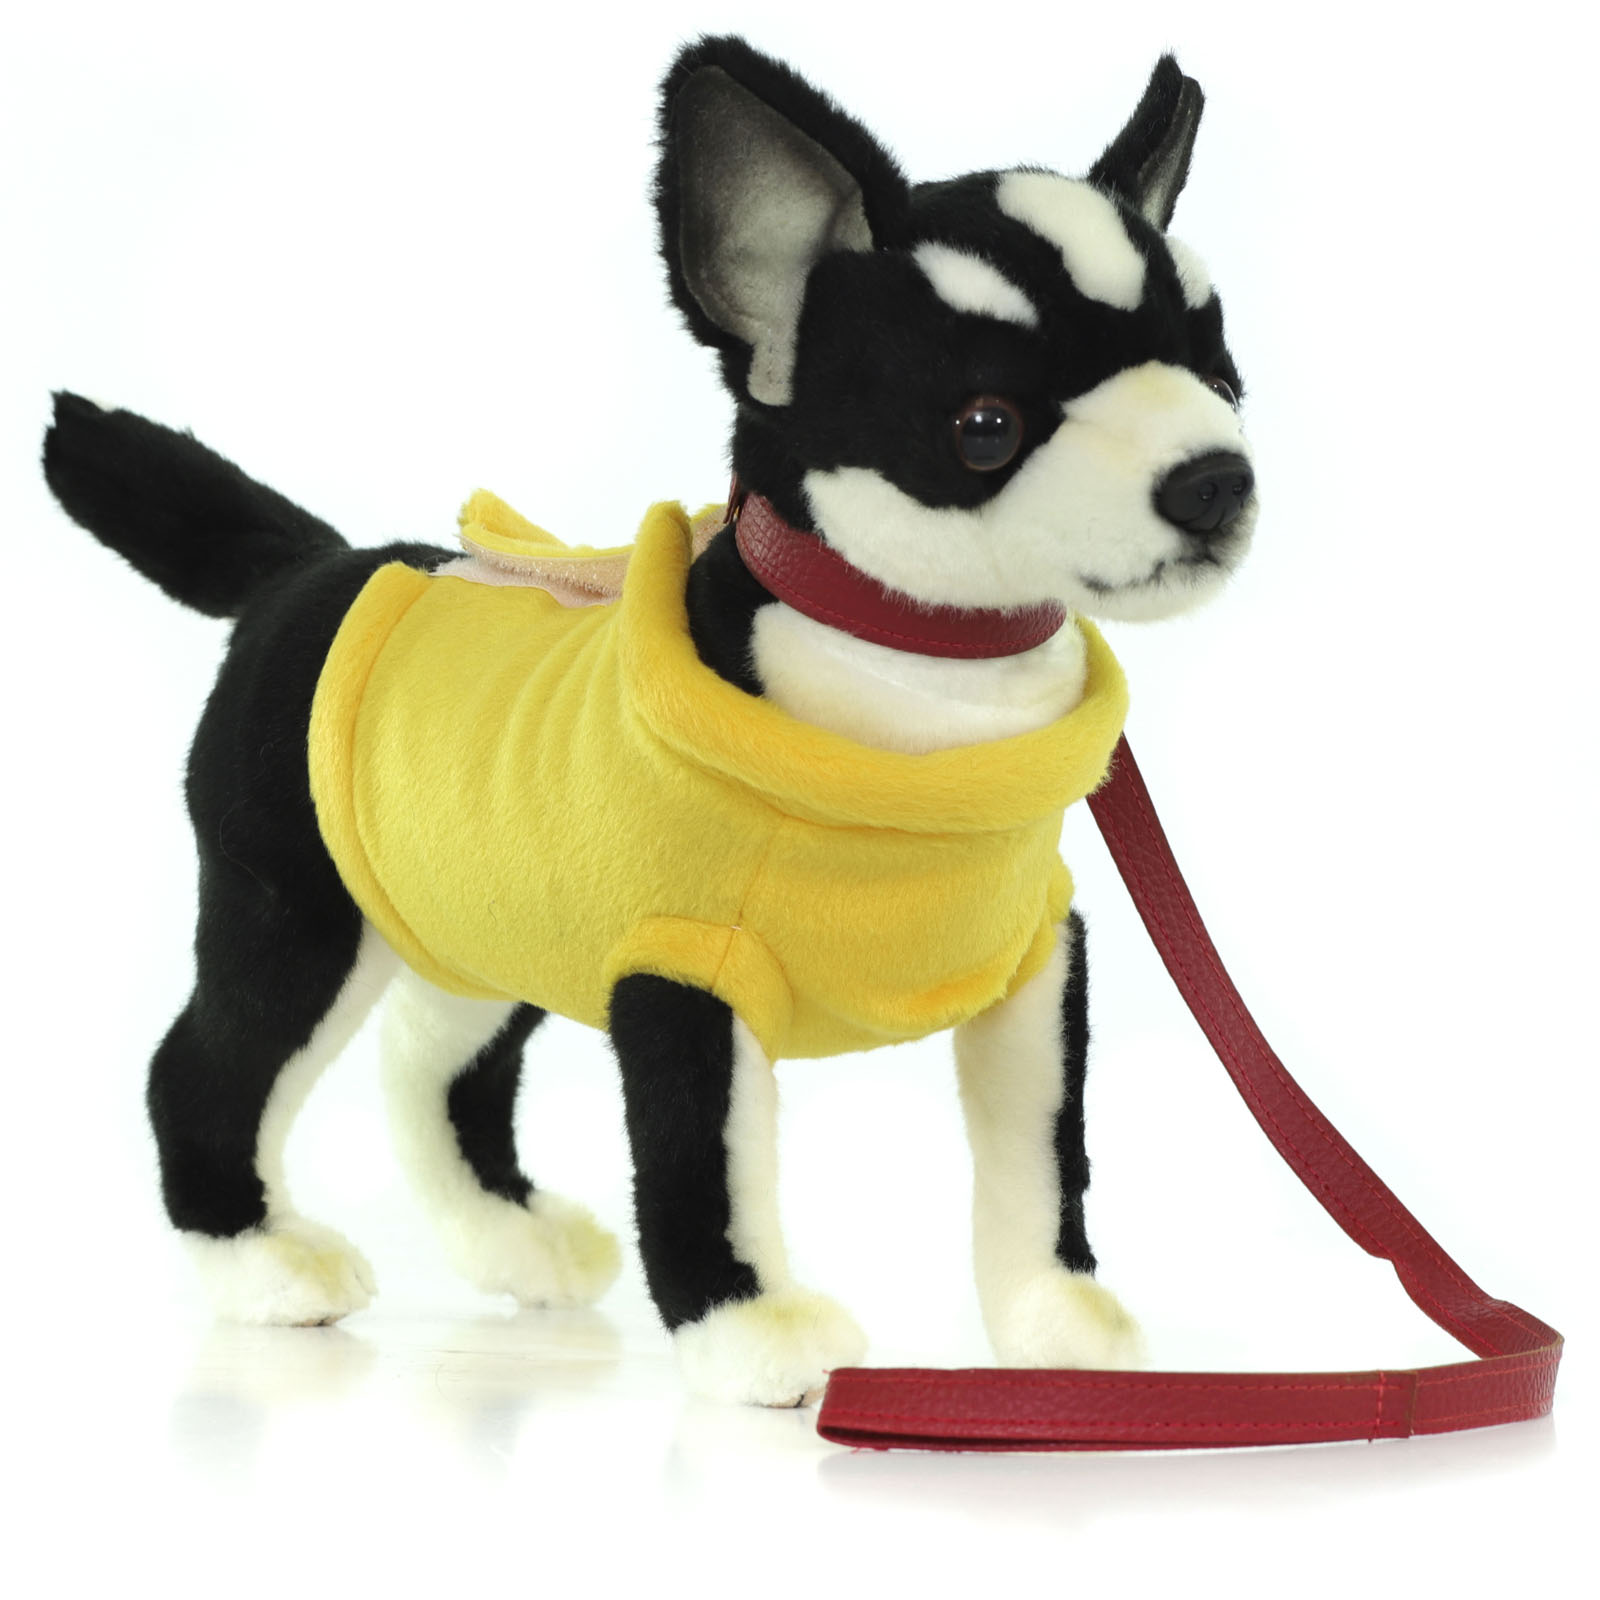 Реалистичная мягкая игрушка Hansa Creation Собака чихуахуа, в жёлтой футболке, 27 см реалистичная мягкая игрушка hansa creation собака йоркширский терьер 38 см